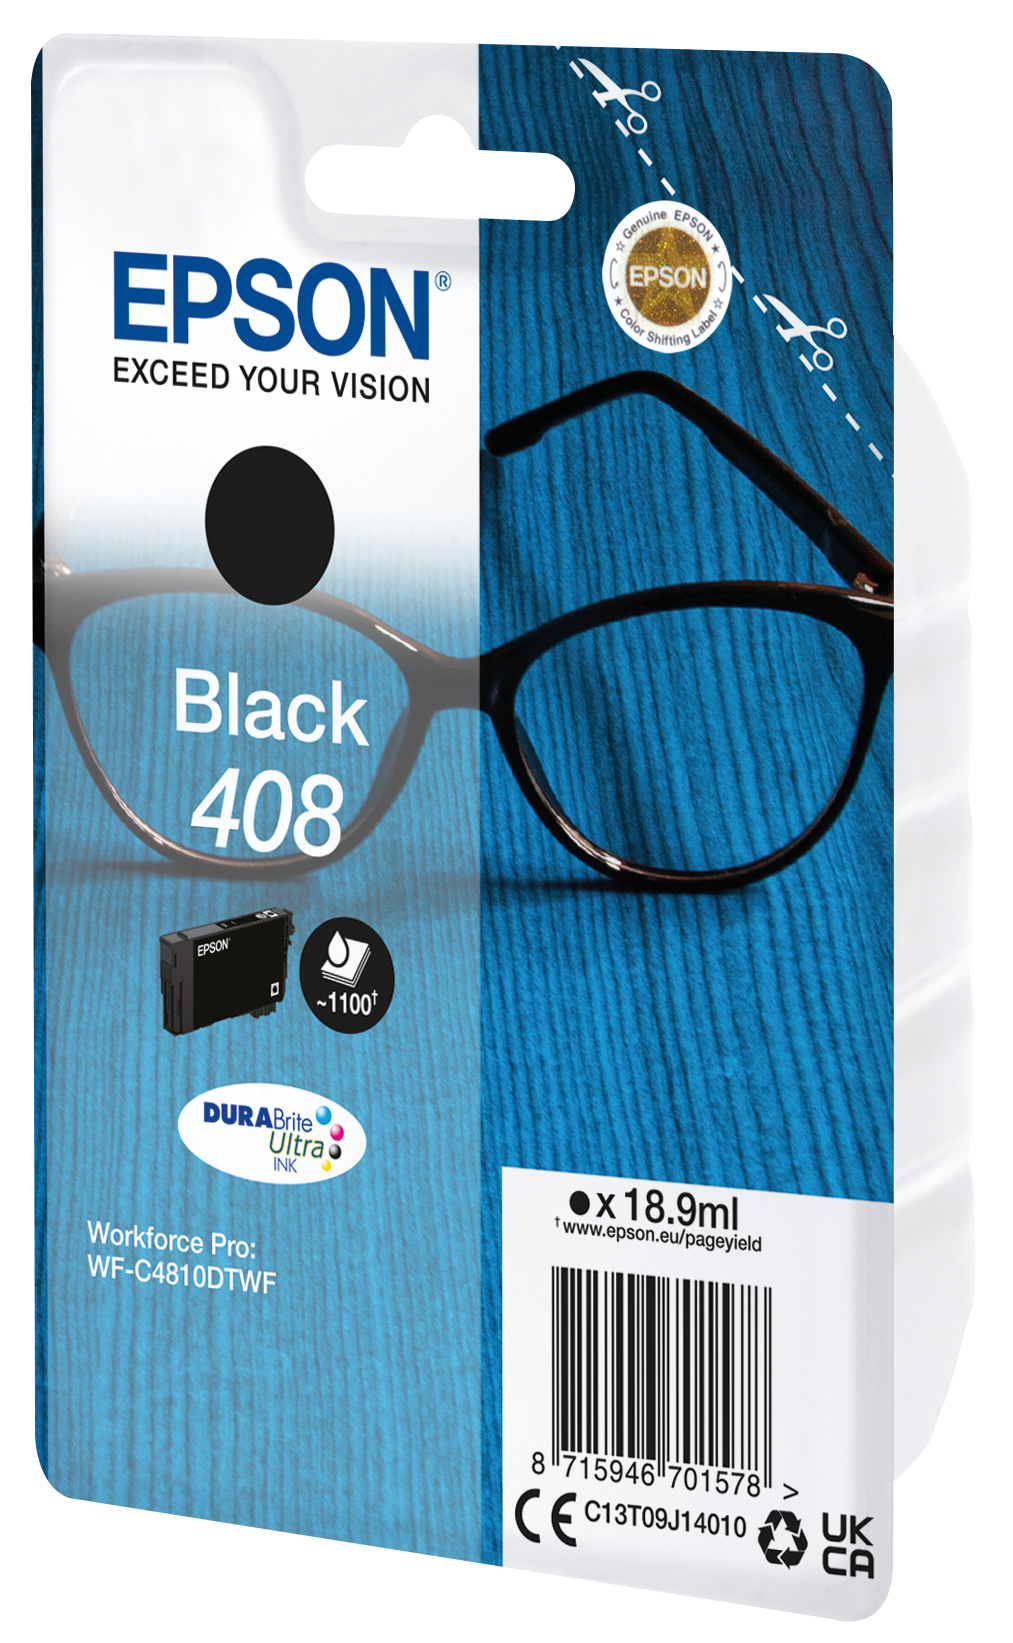 Epson Singlepack Black 408 DURABrite Ultra Ink - Standardertrag - Tinte auf Pigmentbasis - 18,9 ml - 1100 Seiten - 1 Stück(e) - Einzelpackung